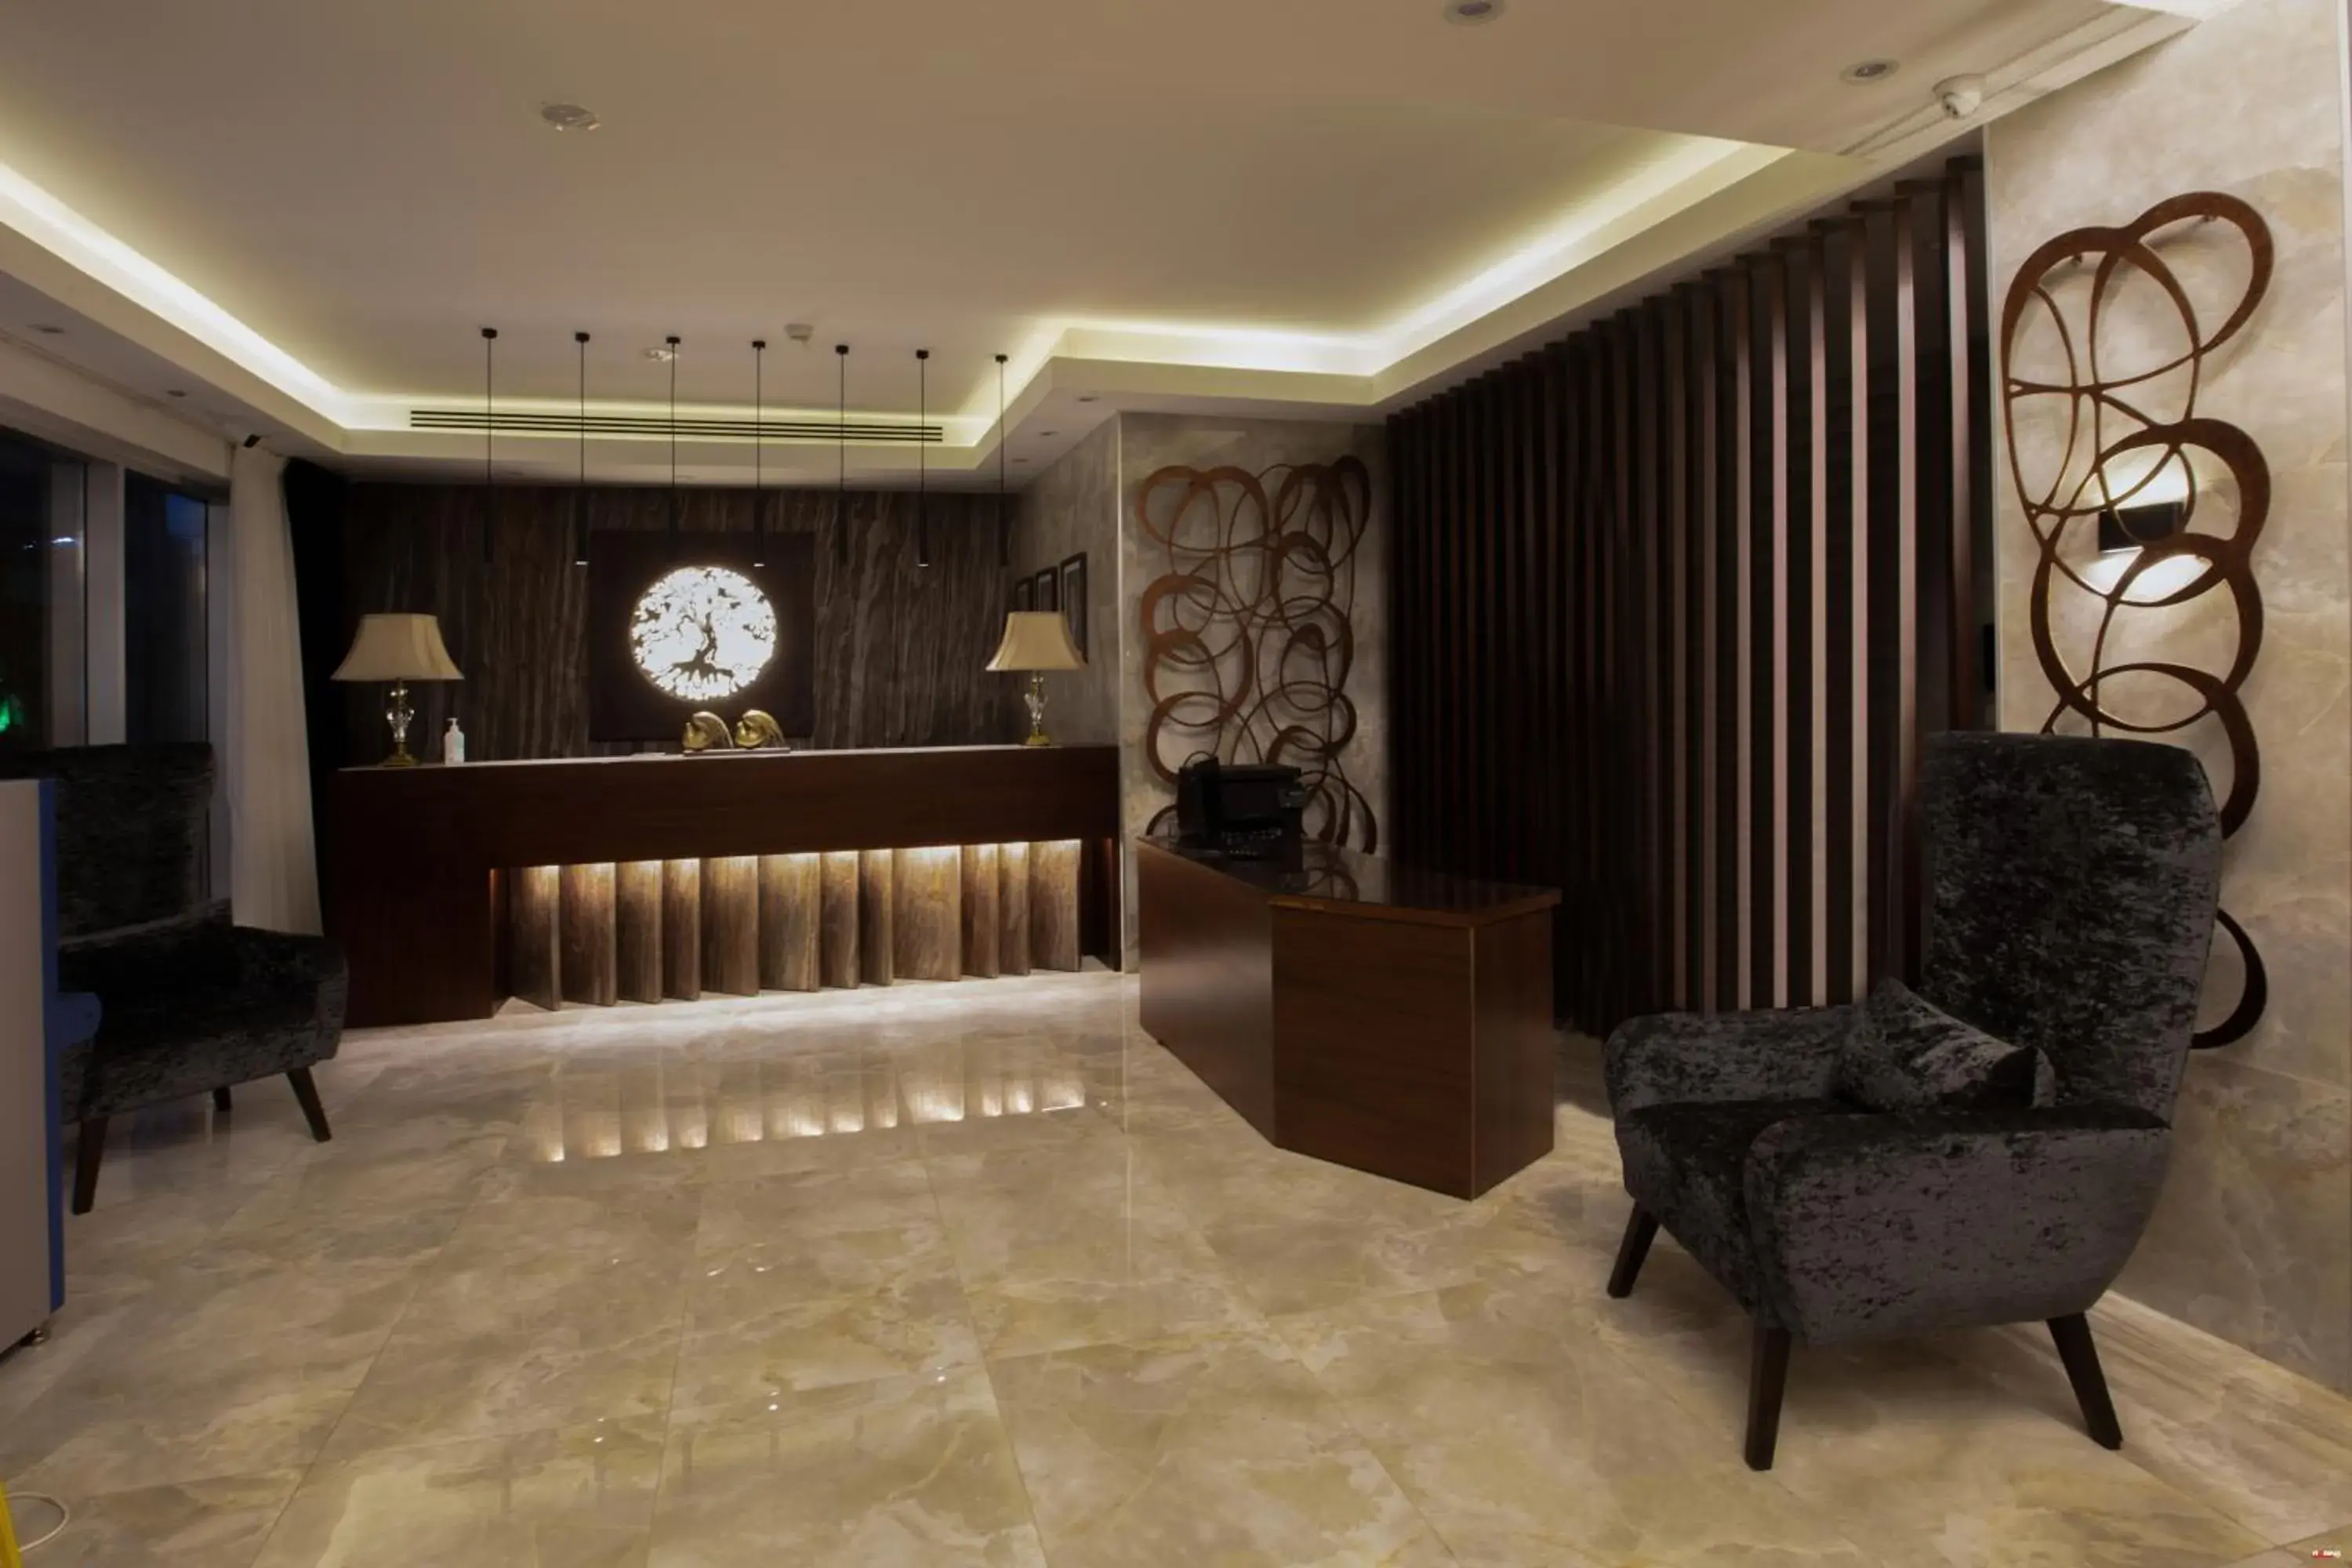 Lobby or reception, Lobby/Reception in Seas Hotel Amman